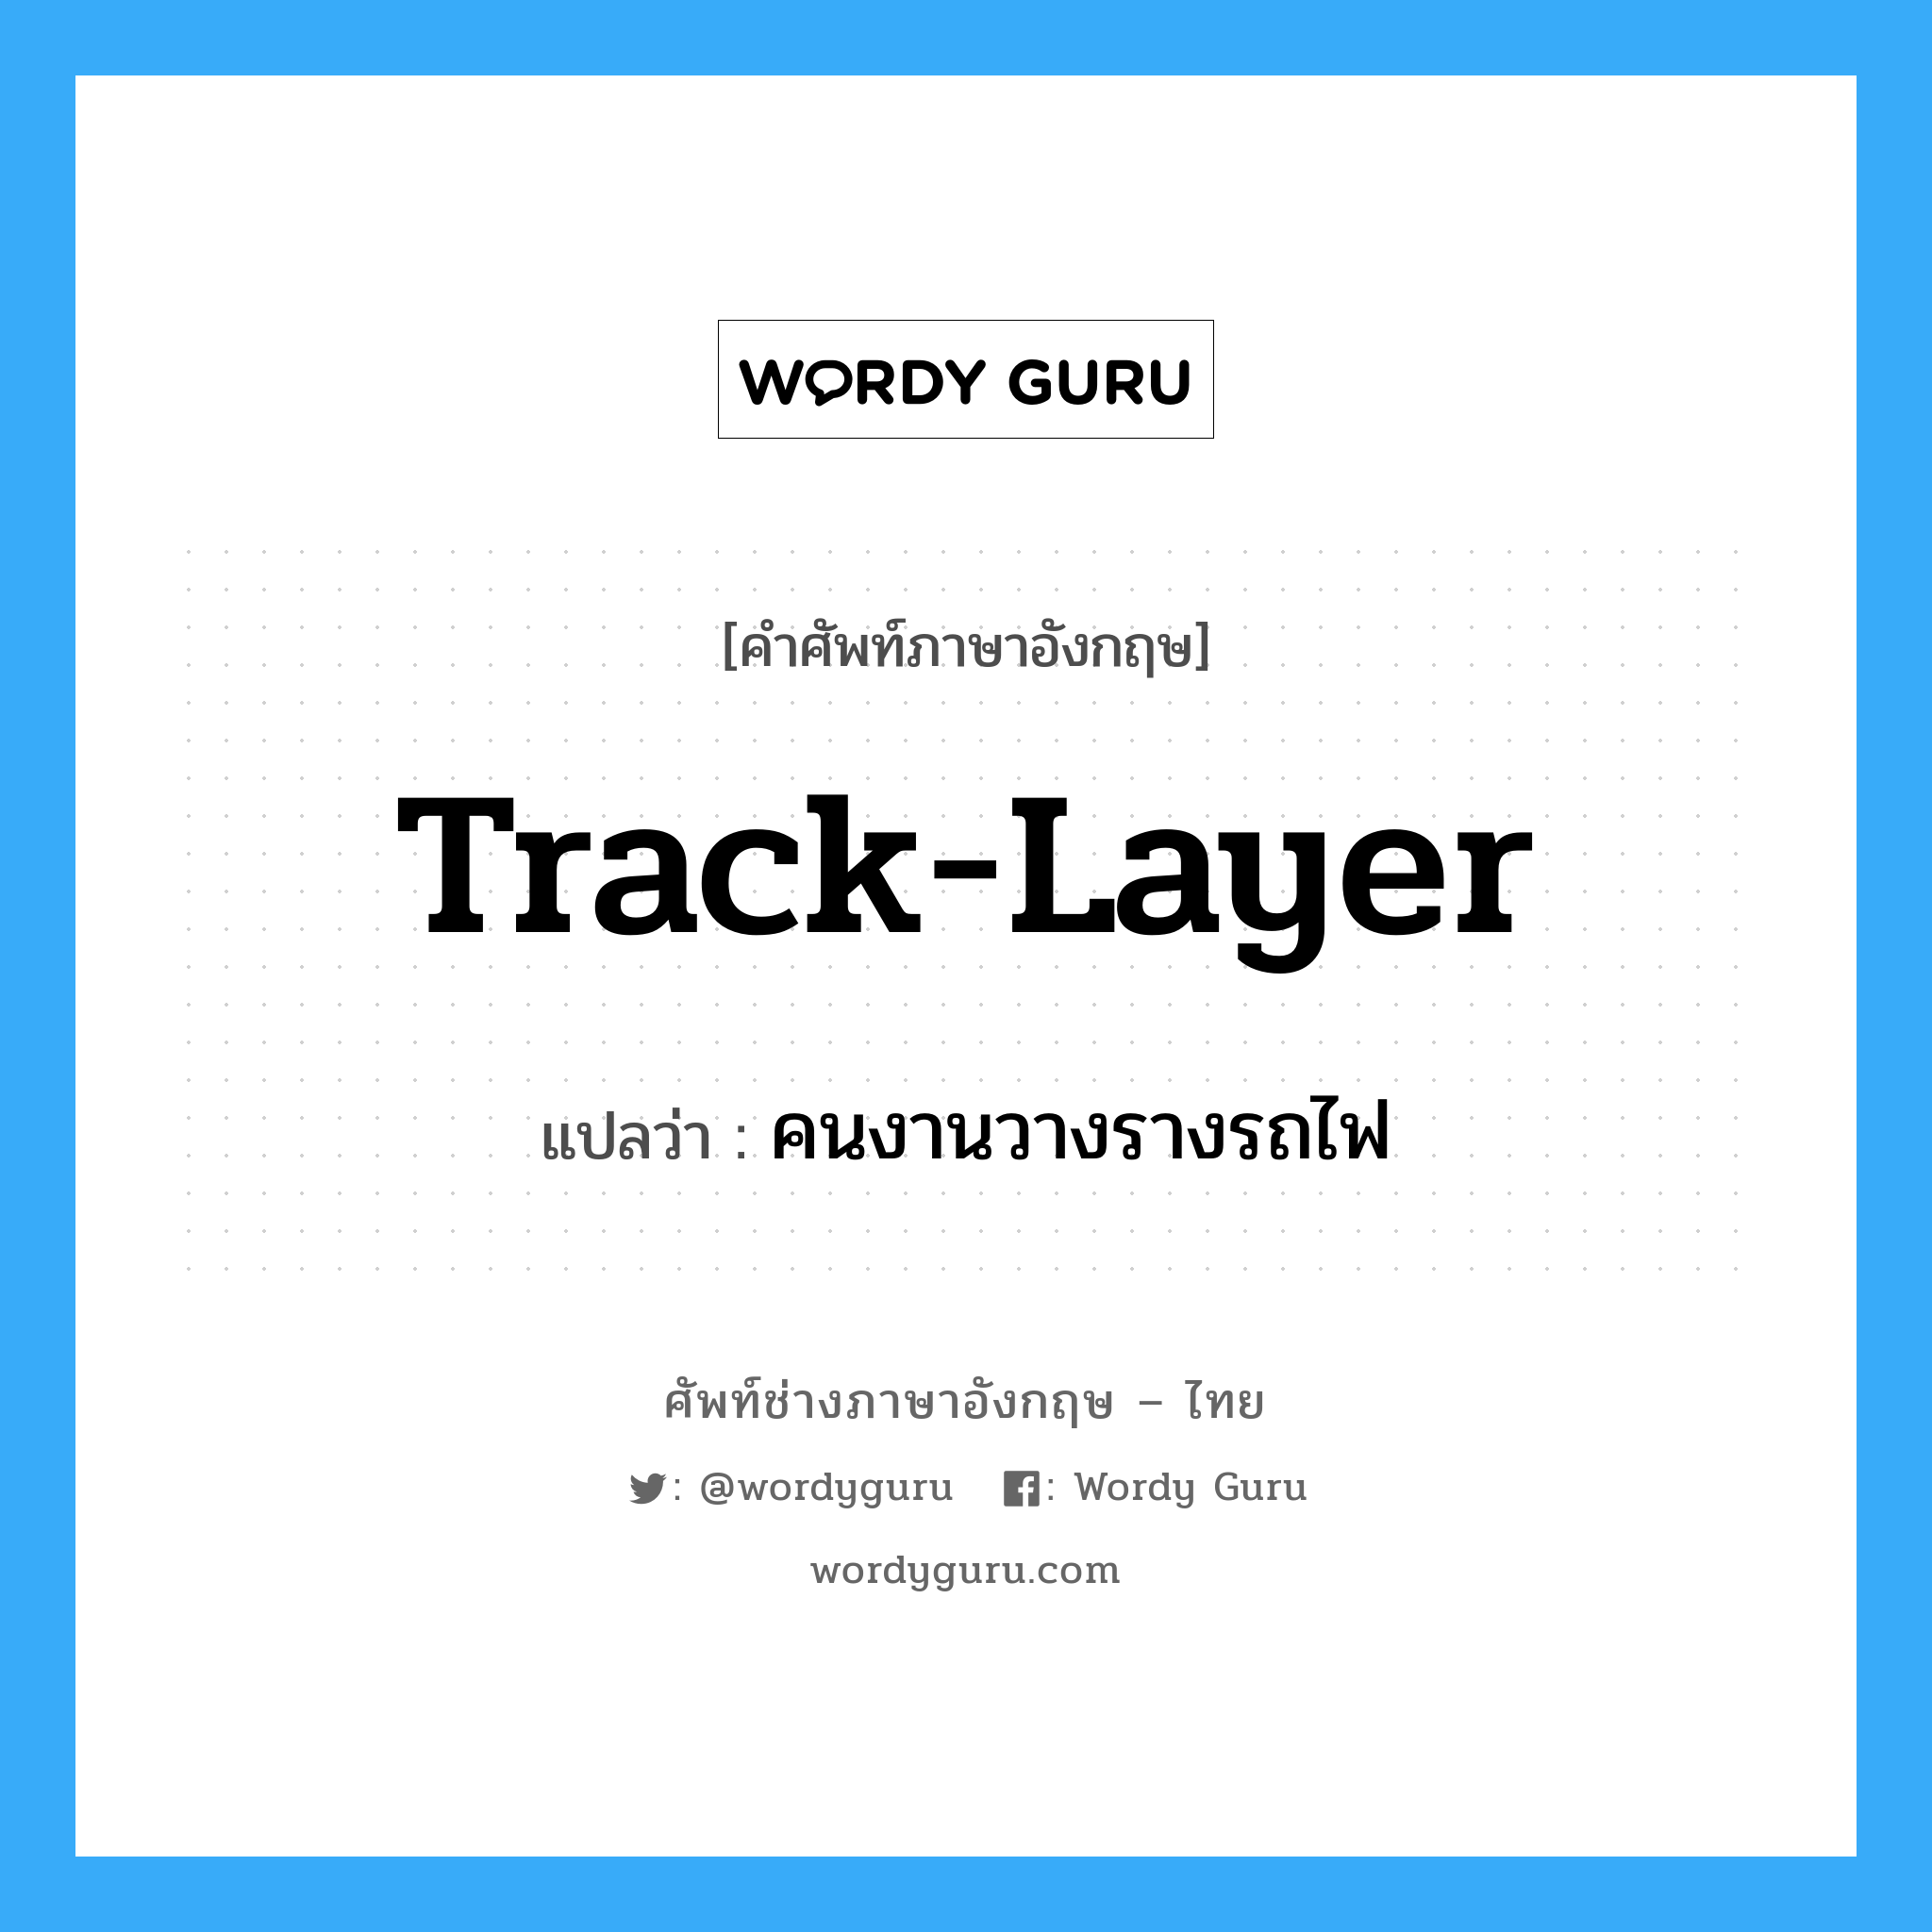 track-layer แปลว่า?, คำศัพท์ช่างภาษาอังกฤษ - ไทย track-layer คำศัพท์ภาษาอังกฤษ track-layer แปลว่า คนงานวางรางรถไฟ